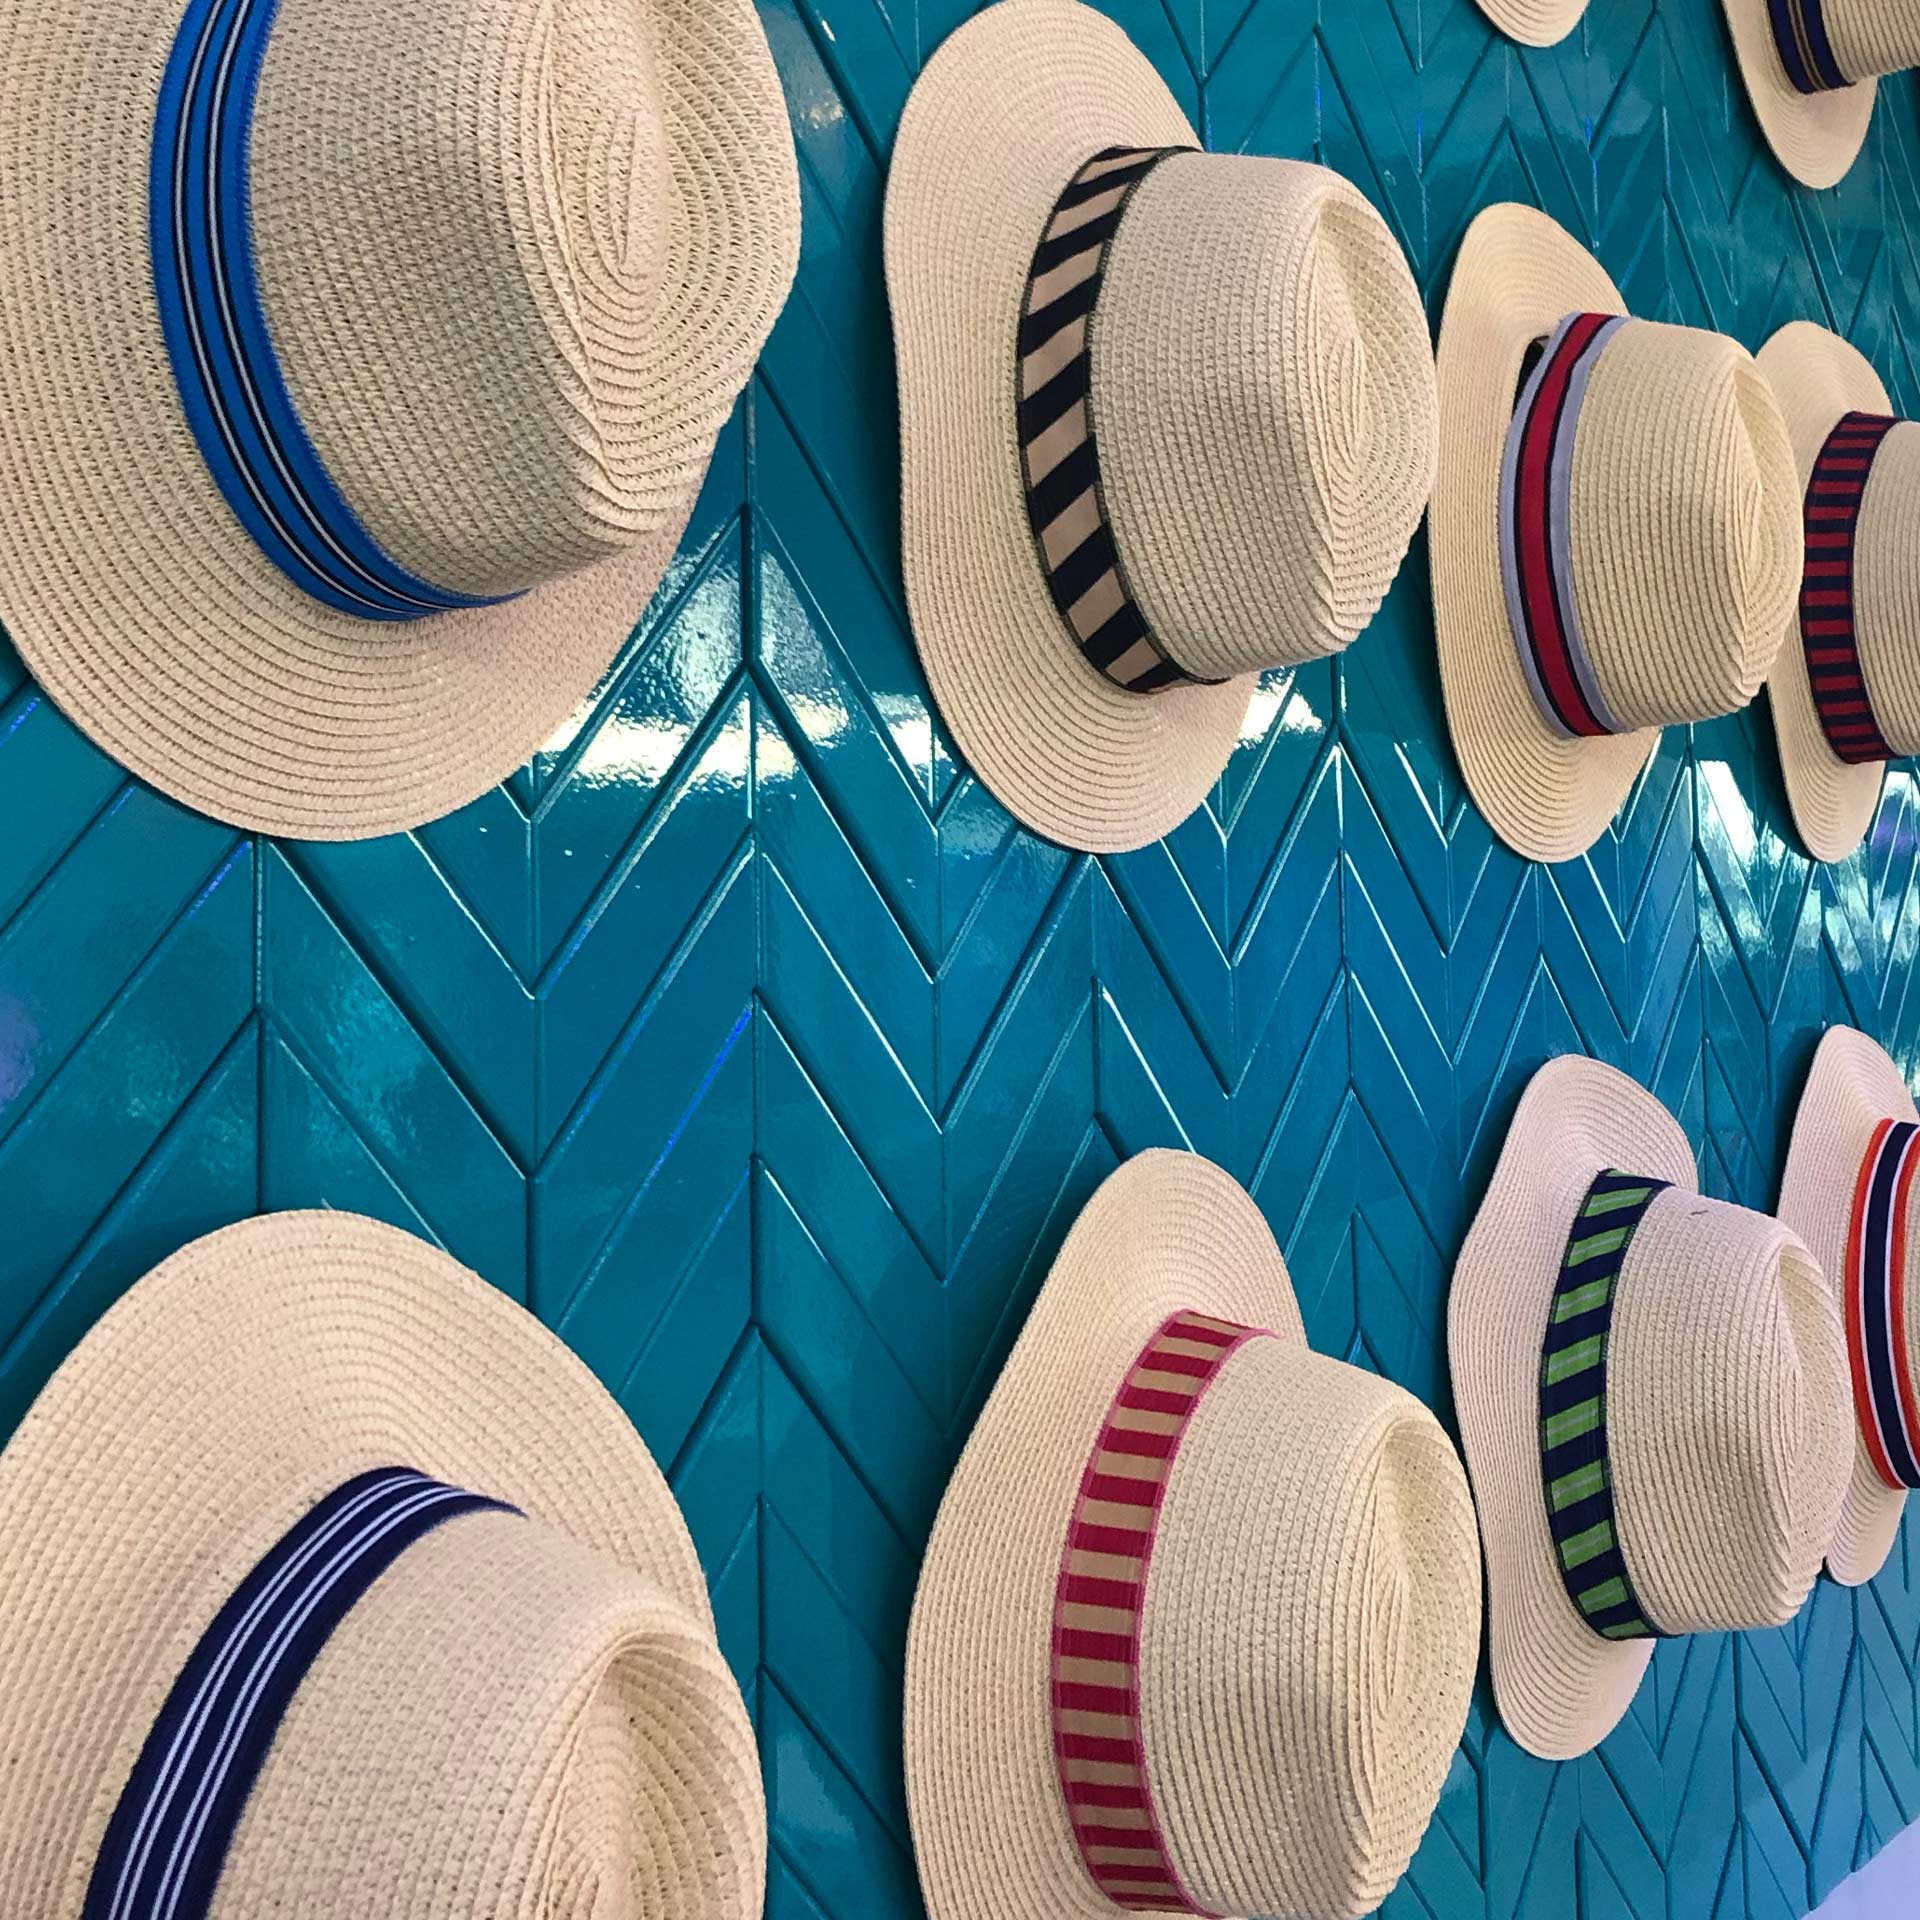 Wall of cabana hats